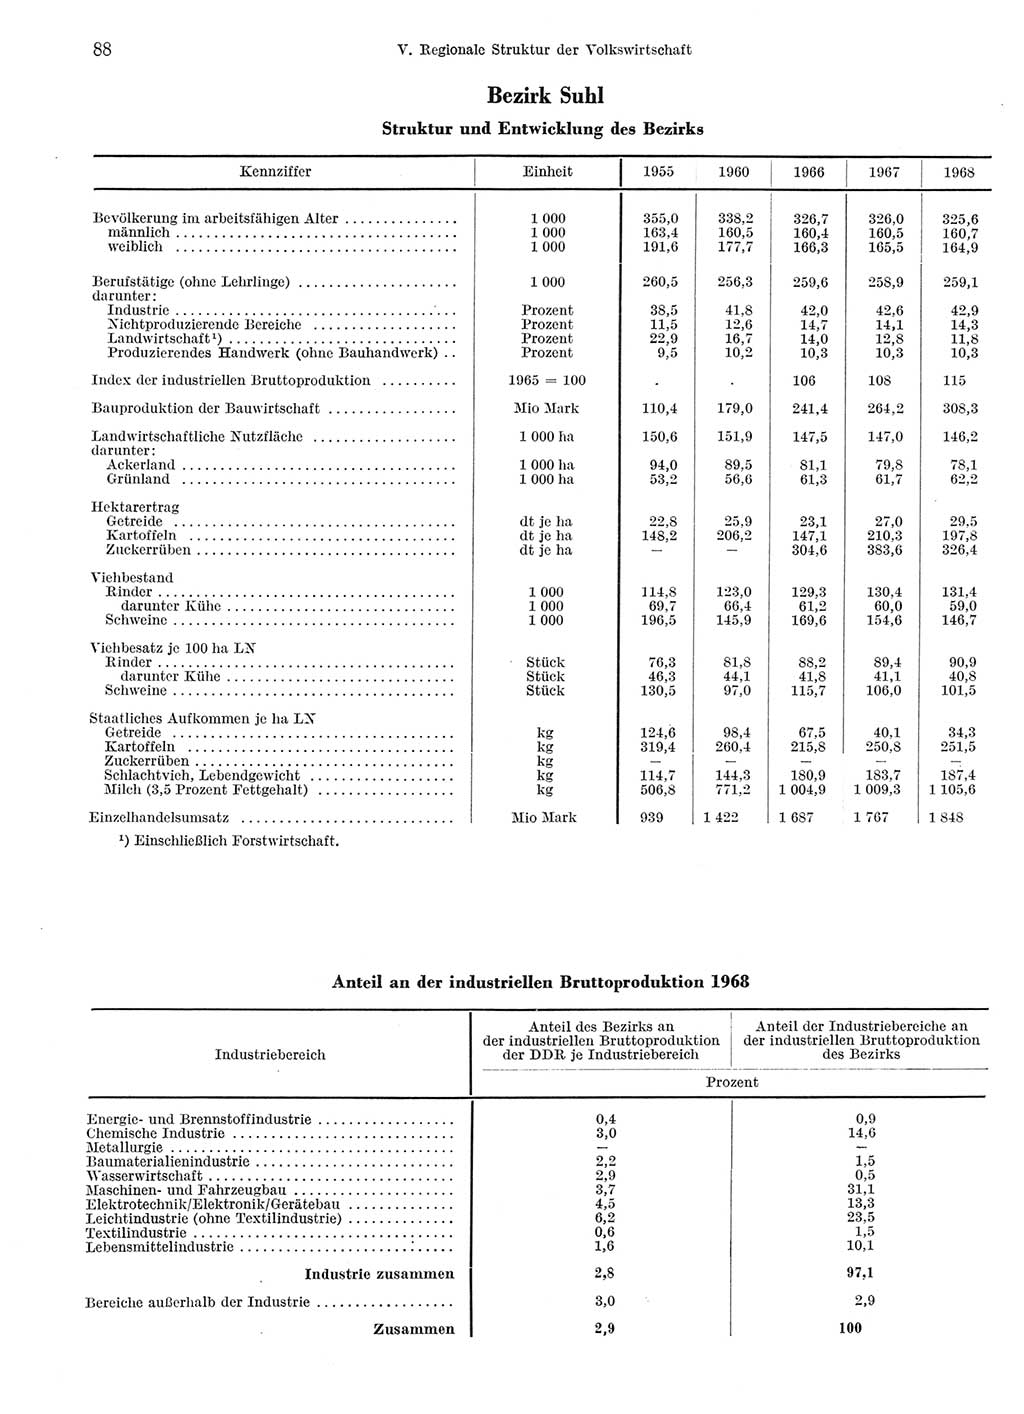 Statistisches Jahrbuch der Deutschen Demokratischen Republik (DDR) 1969, Seite 88 (Stat. Jb. DDR 1969, S. 88)